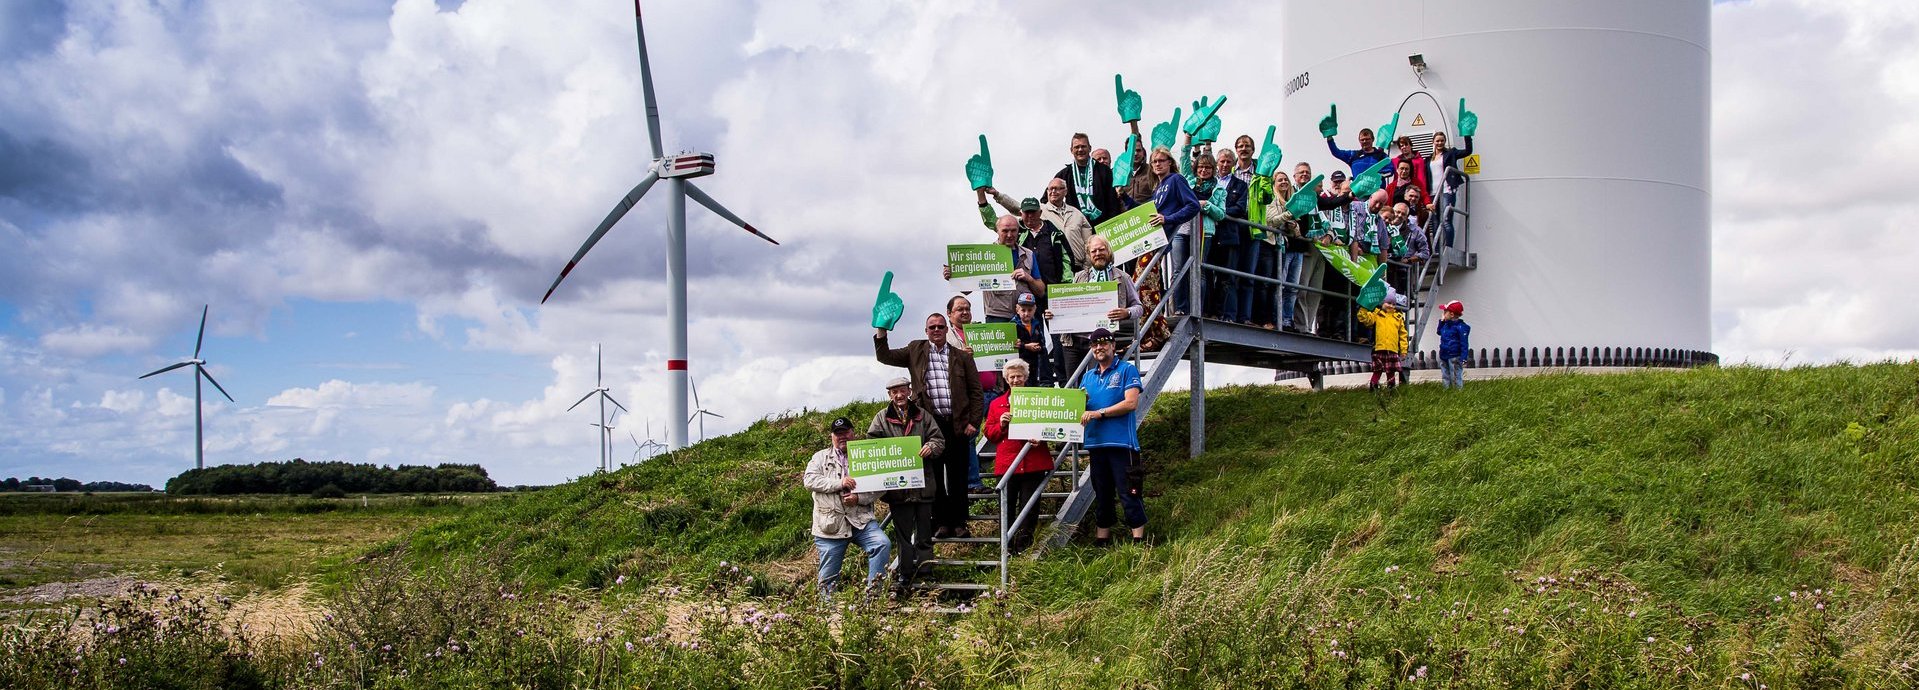 Menschengruppe mit Wir sind die Energiewende Schildern auf den Treppen vor einem Windrad